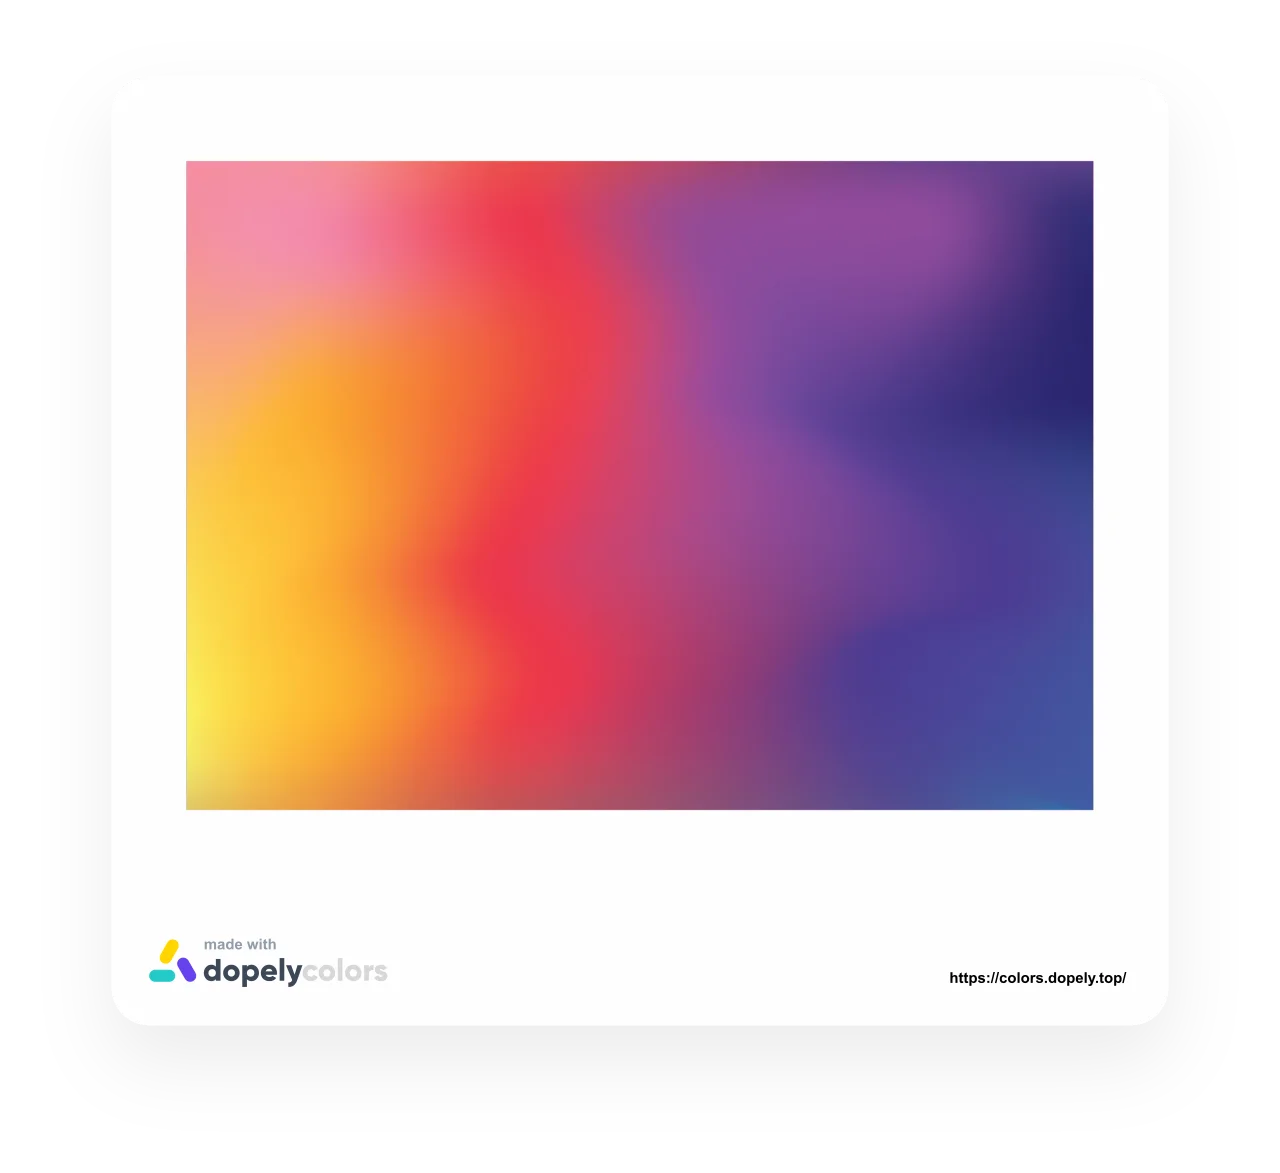 Dopely Colors là công cụ tạo độ màu sắc và gradient đẹp mắt, giúp bạn tạo nên những hiệu ứng nổi bật và thu hút cho trang web của mình. Nó cung cấp một bộ màu sắc đa dạng và thu hút, bạn có thể dễ dàng kết hợp chúng để tạo ra một trang web đẹp mắt. Hãy để Dopely Colors giúp bạn thực hiện ý tưởng sáng tạo của mình.